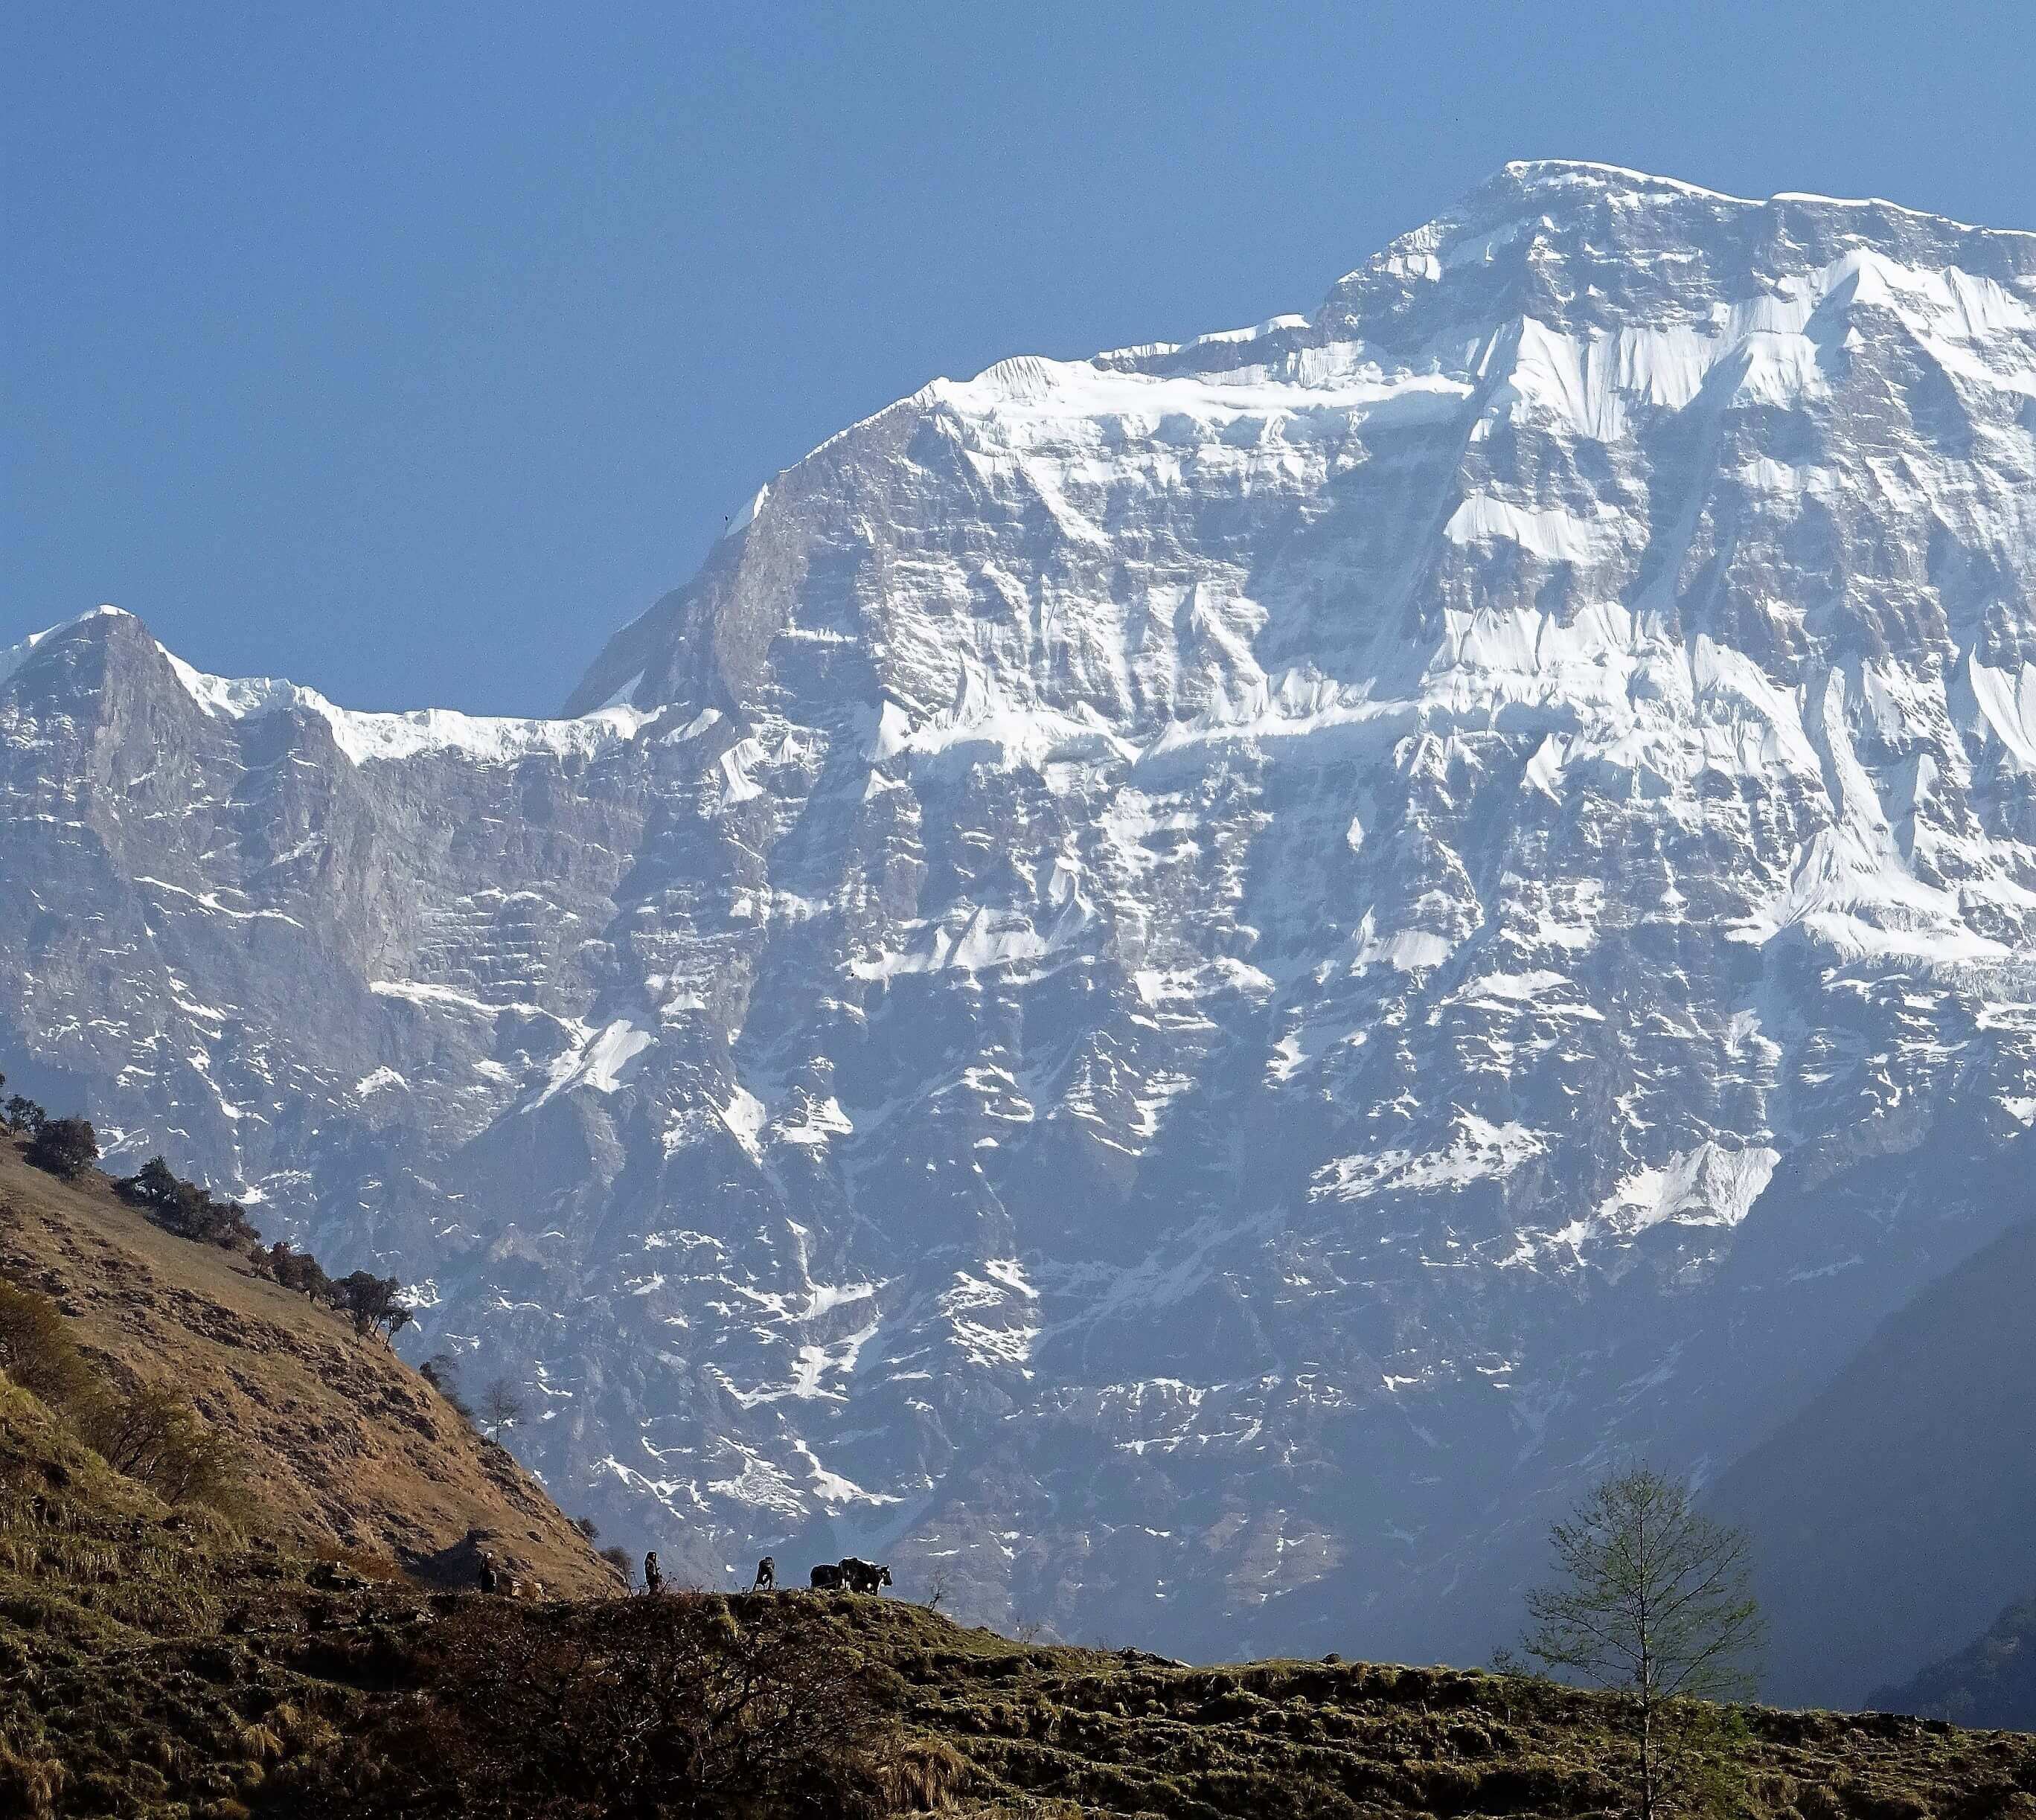  гора Гурджа (Gurja / Gurja Himal, 7193 м) потрясает своей огромной южной стороной, возвышающейся практически на 4 километра над долиной у её подножия. Фото  JOY STEPHENS